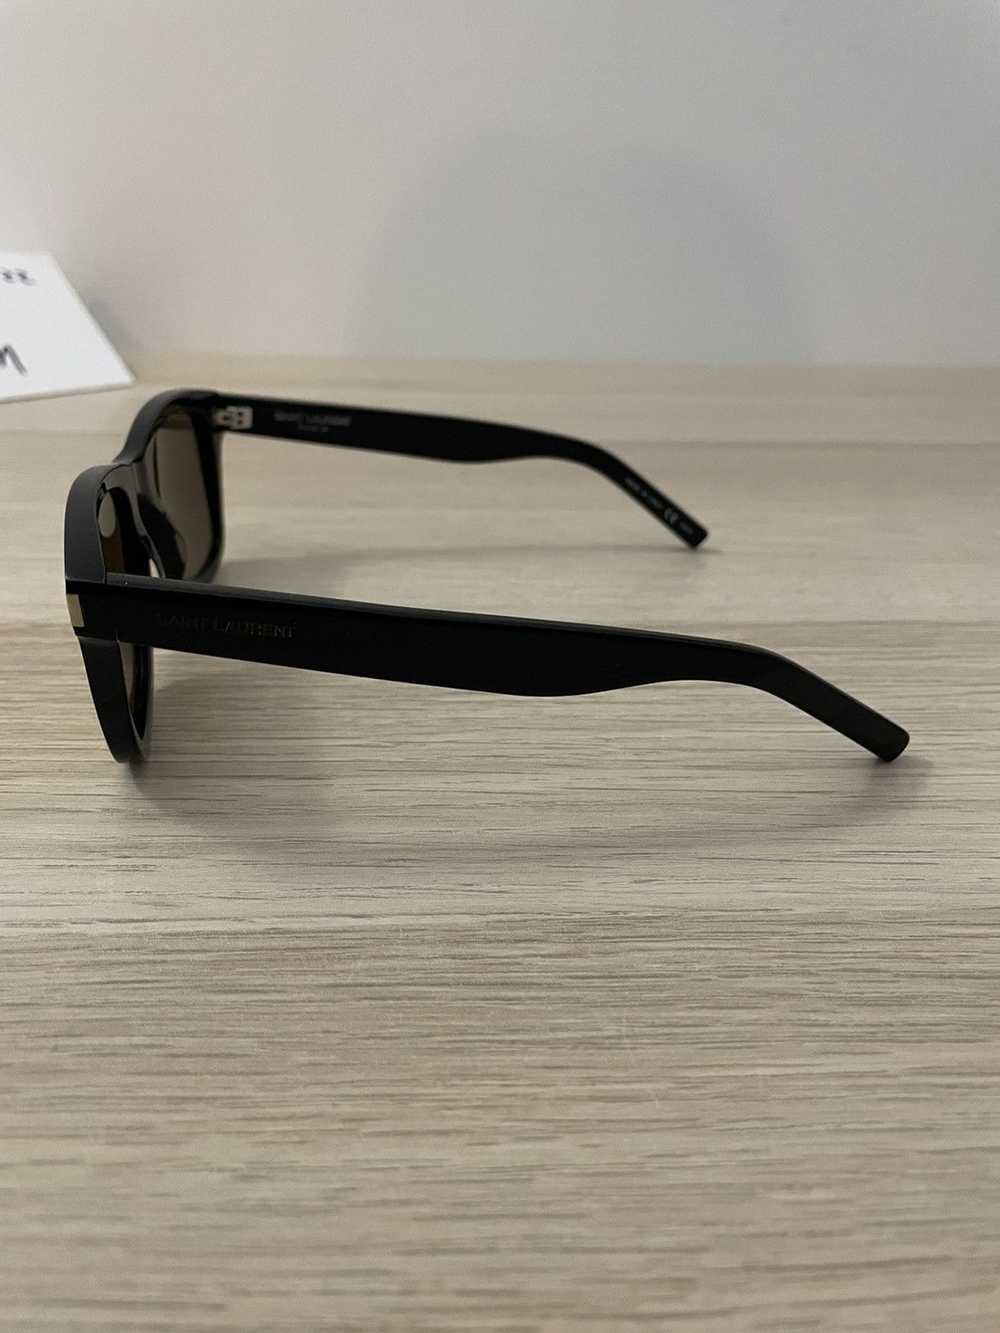 Yves Saint Laurent Saint Laurent Sunglasses - image 7